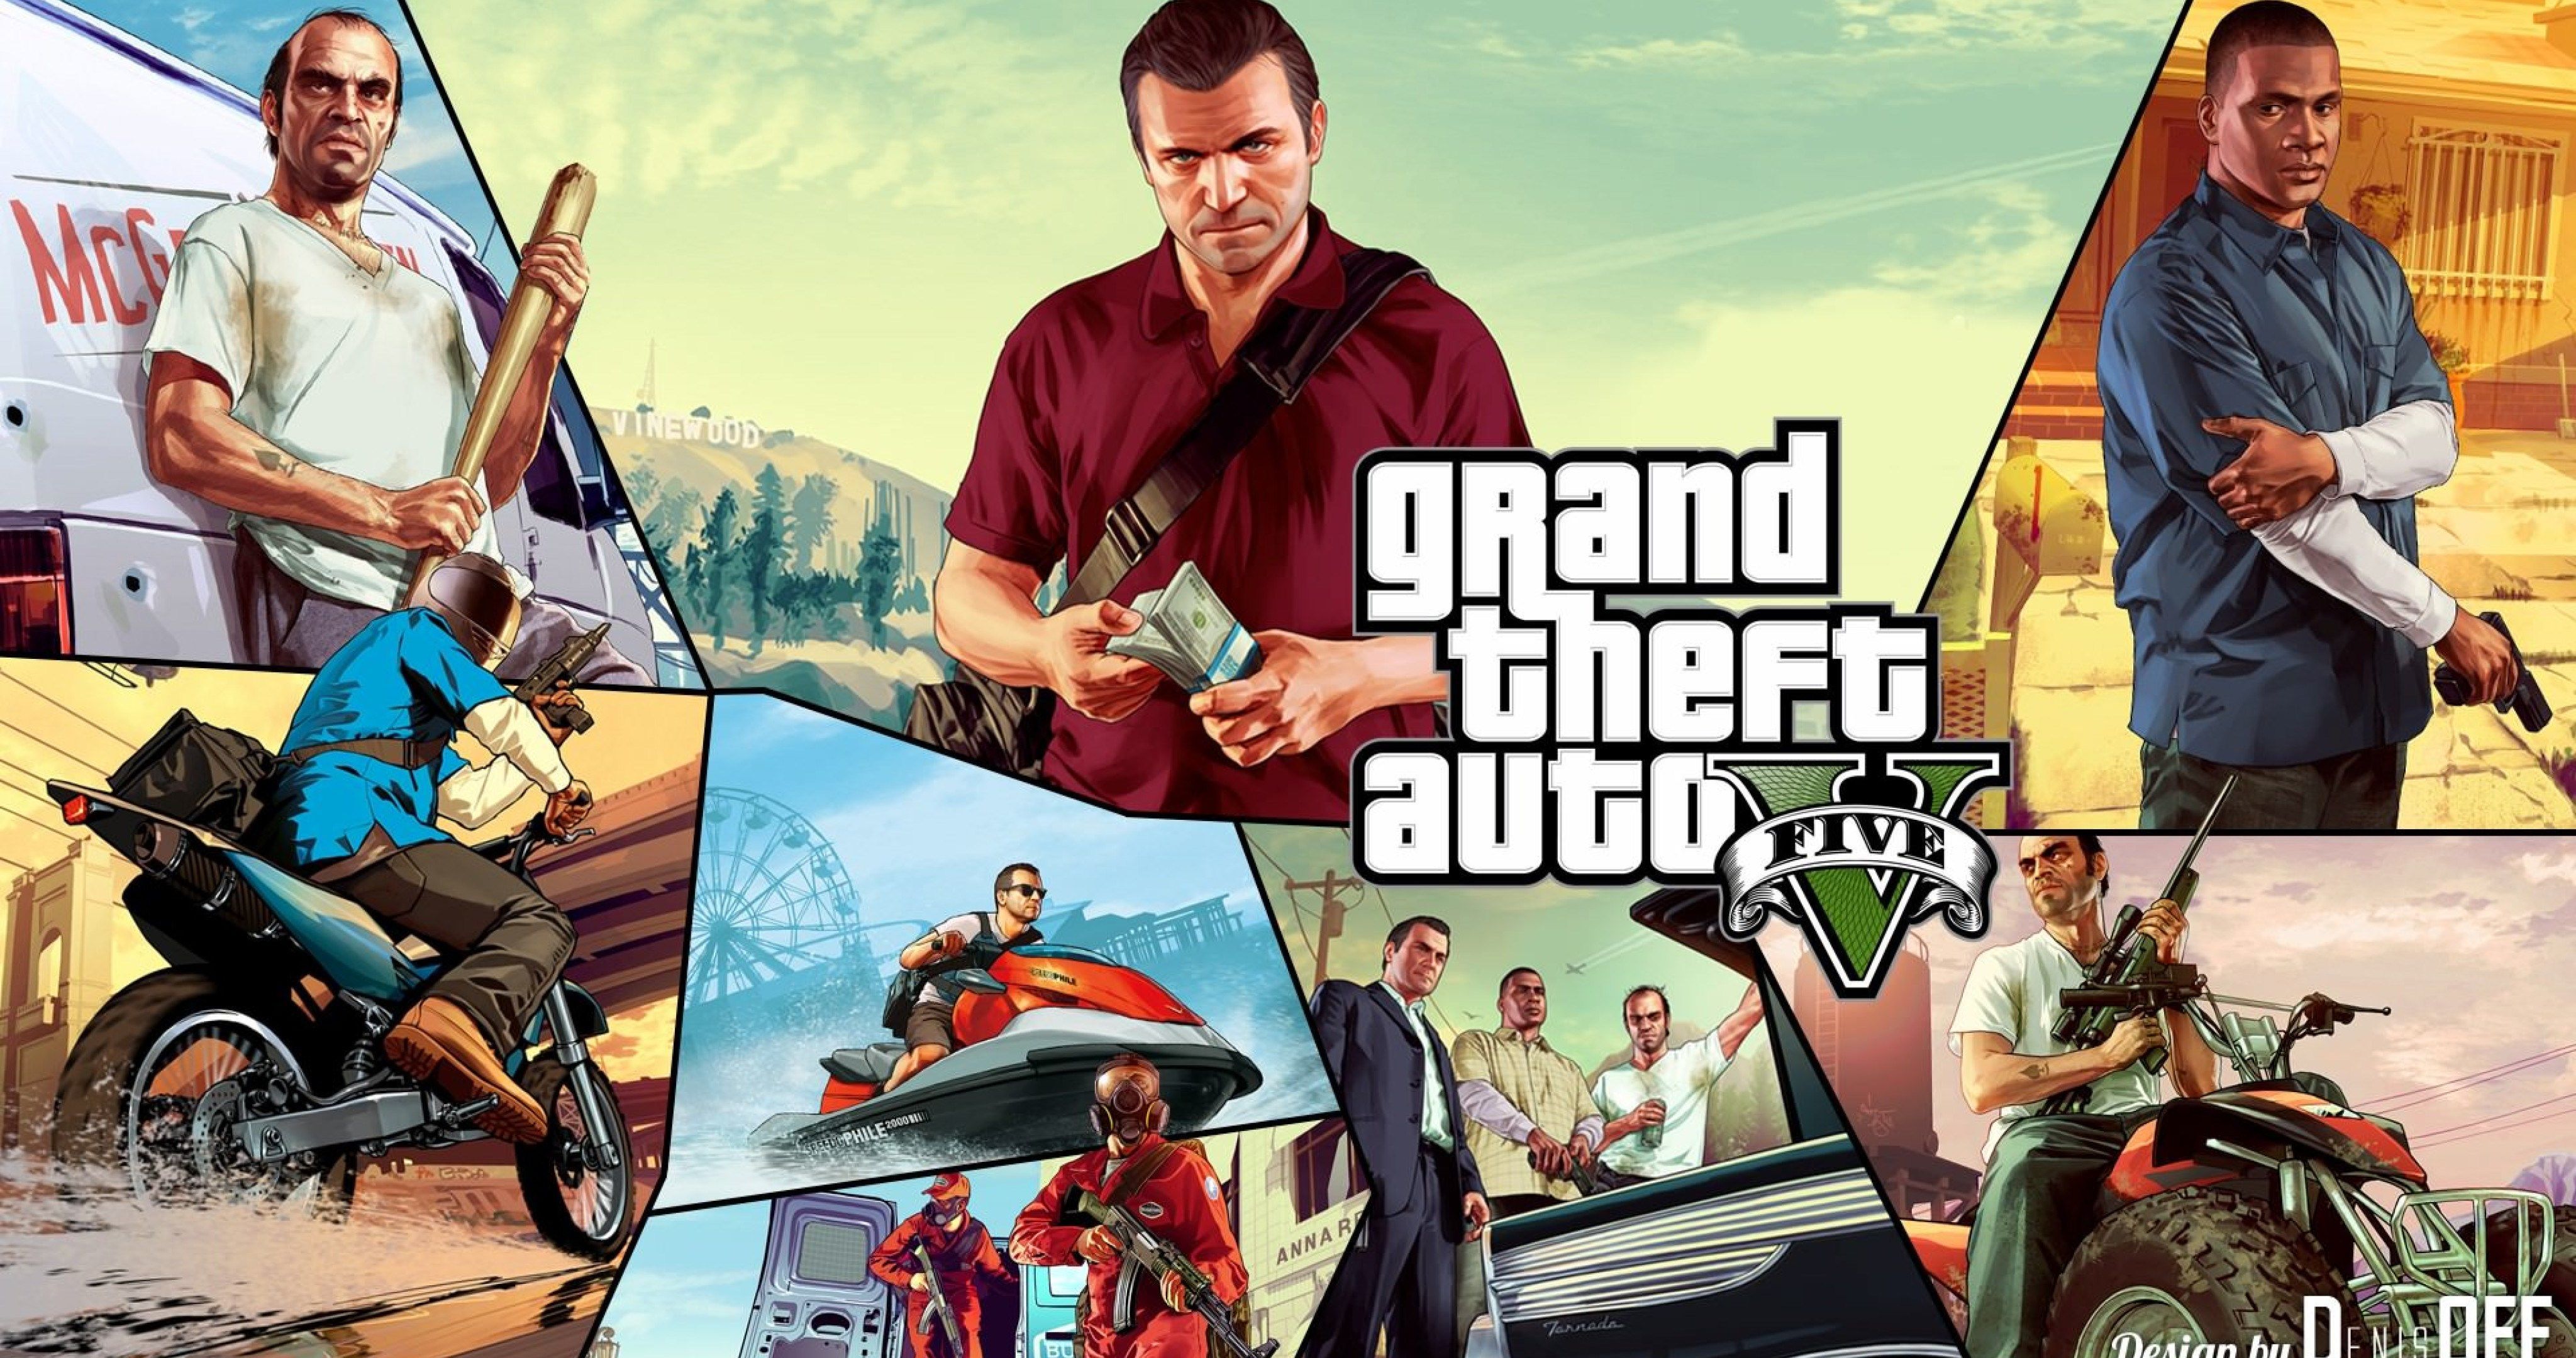 Grand Theft Auto V 4k Wallpaper Picture. Grand theft auto, Gta New wallpaper hd